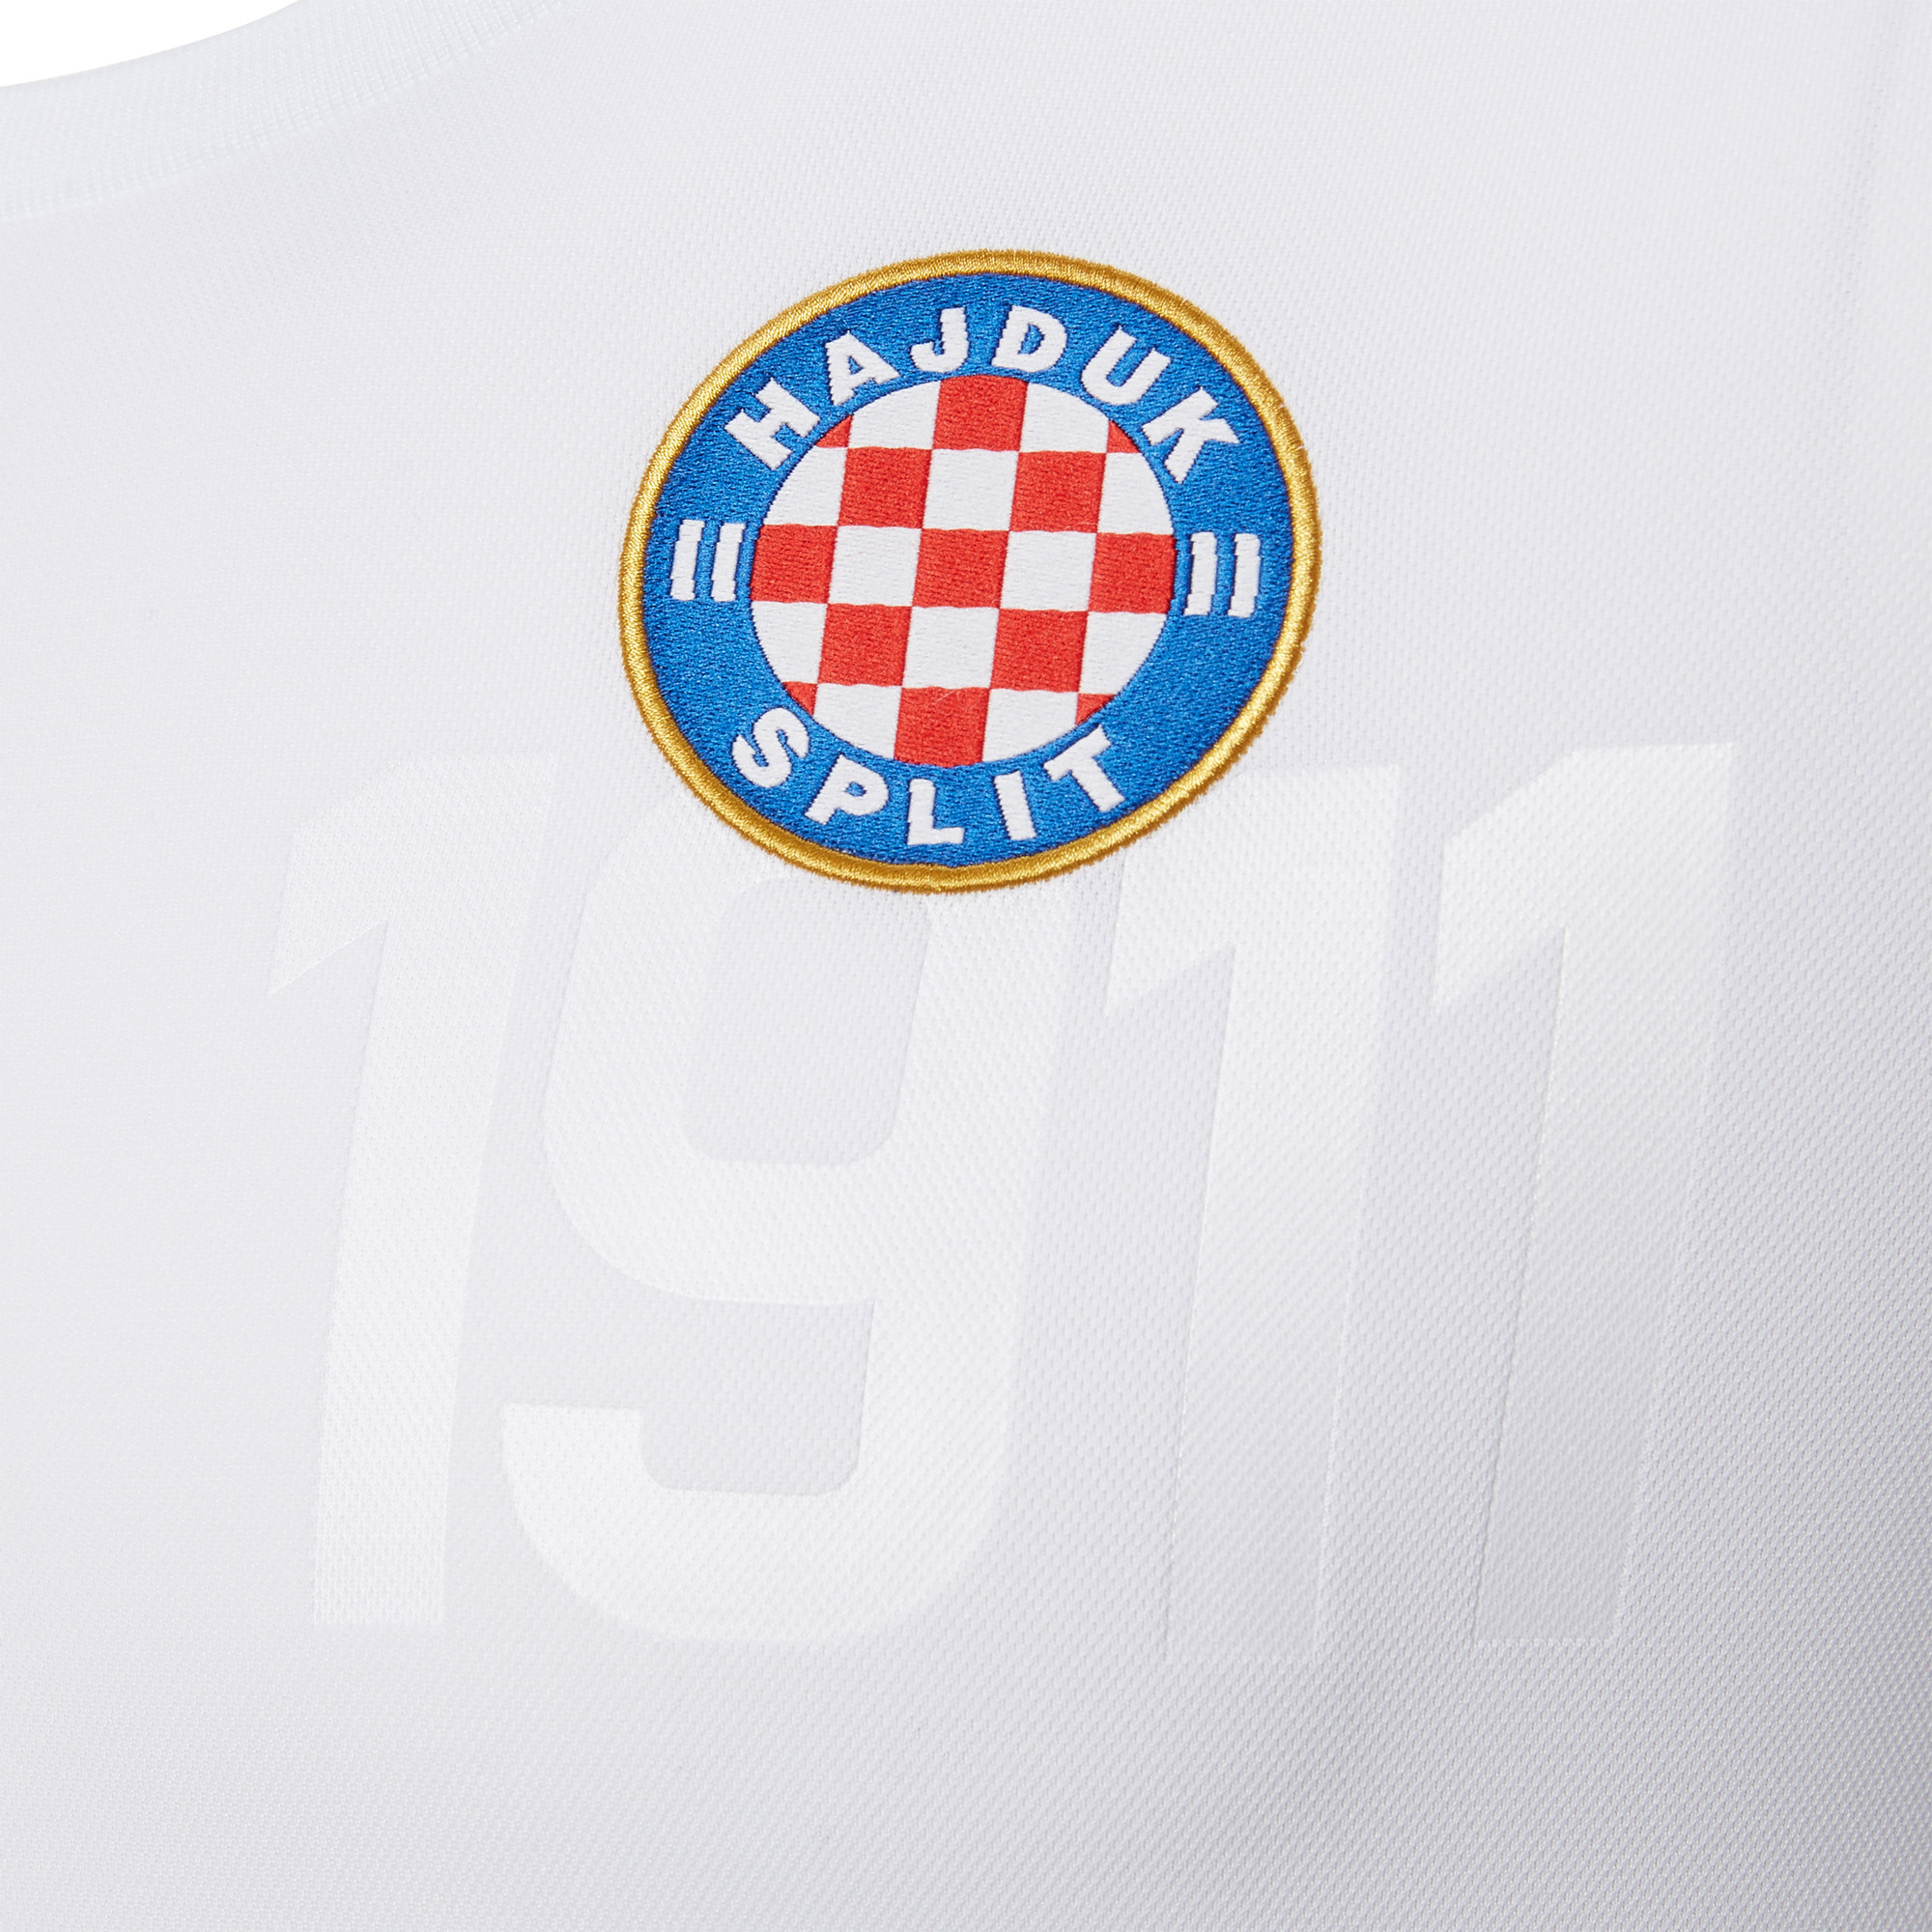 Hajduk Split 2018-19 Macron Home Kit | 18/19 Kits | Football shirt blog